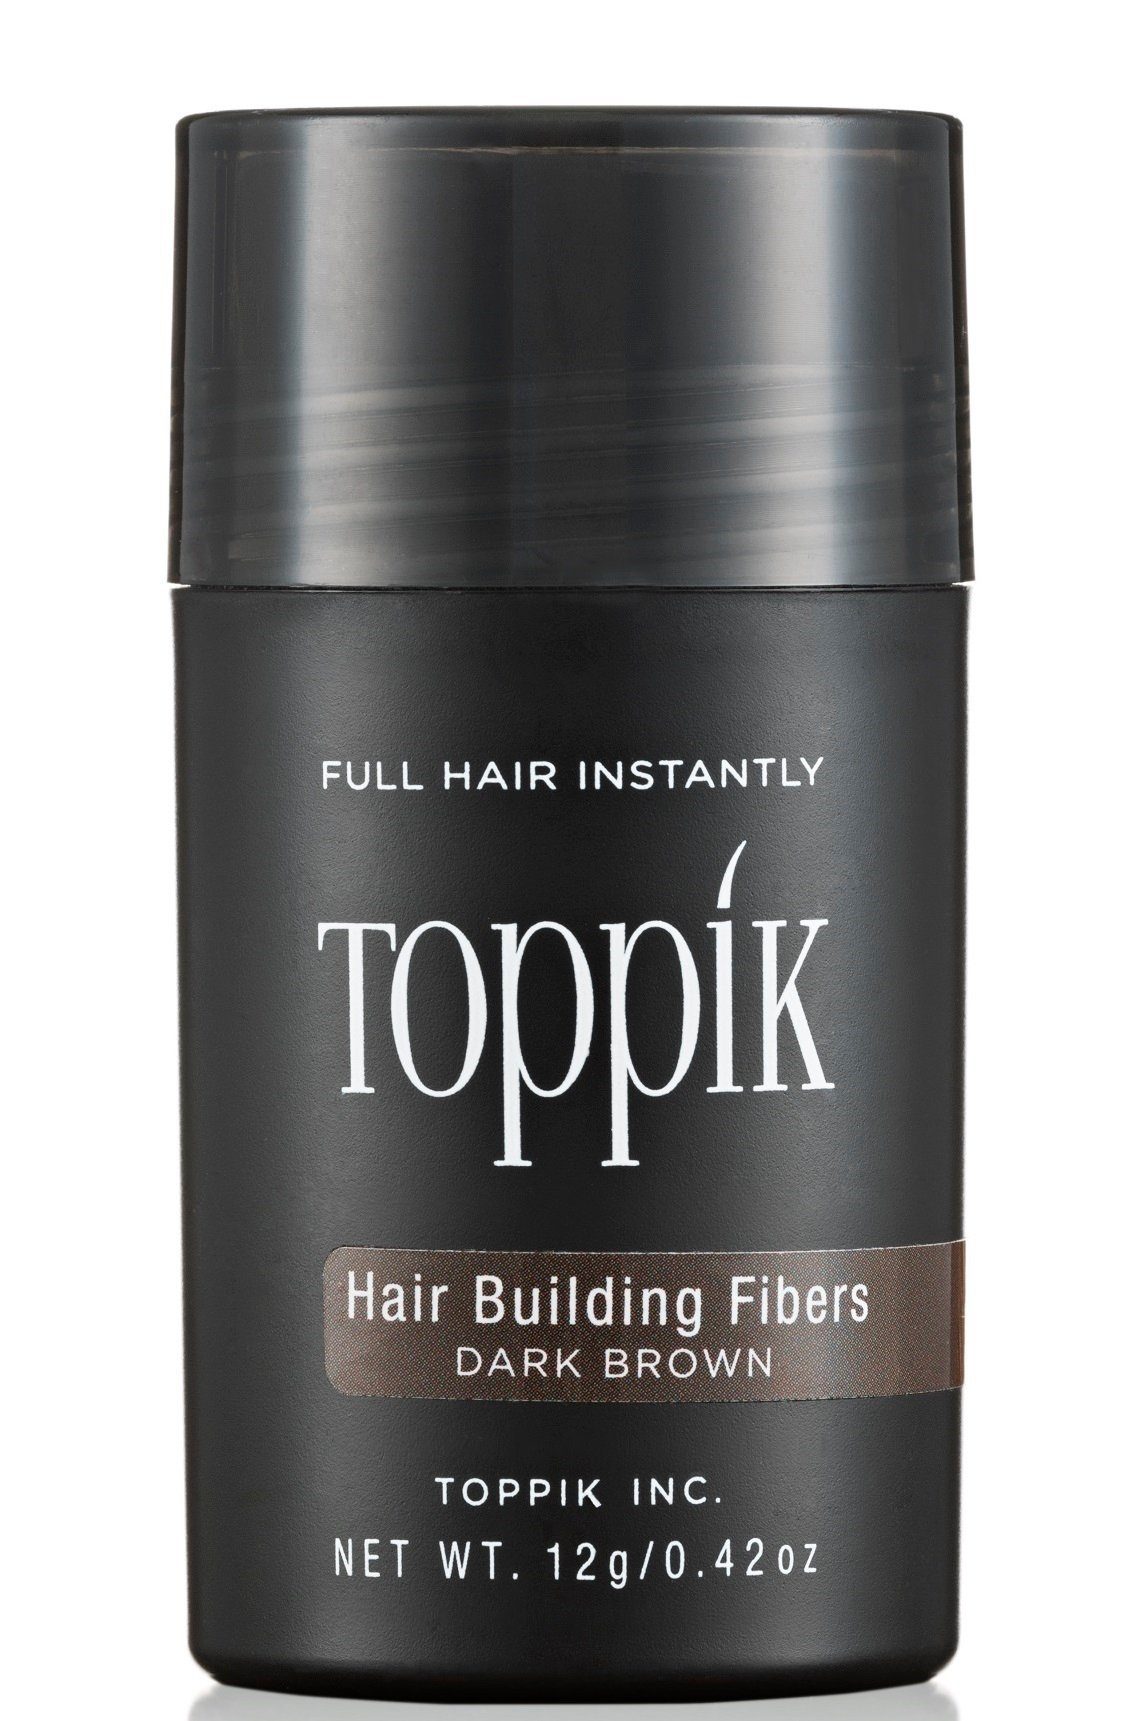 12 Haarverdichtung Set SET Haar Haarfasern Rotbraun Spar Spray 118ml. Fibers, TOPPIK Fixier Hair + TOPPIK Haarstyling-Set Streuhaar, Puder, g.